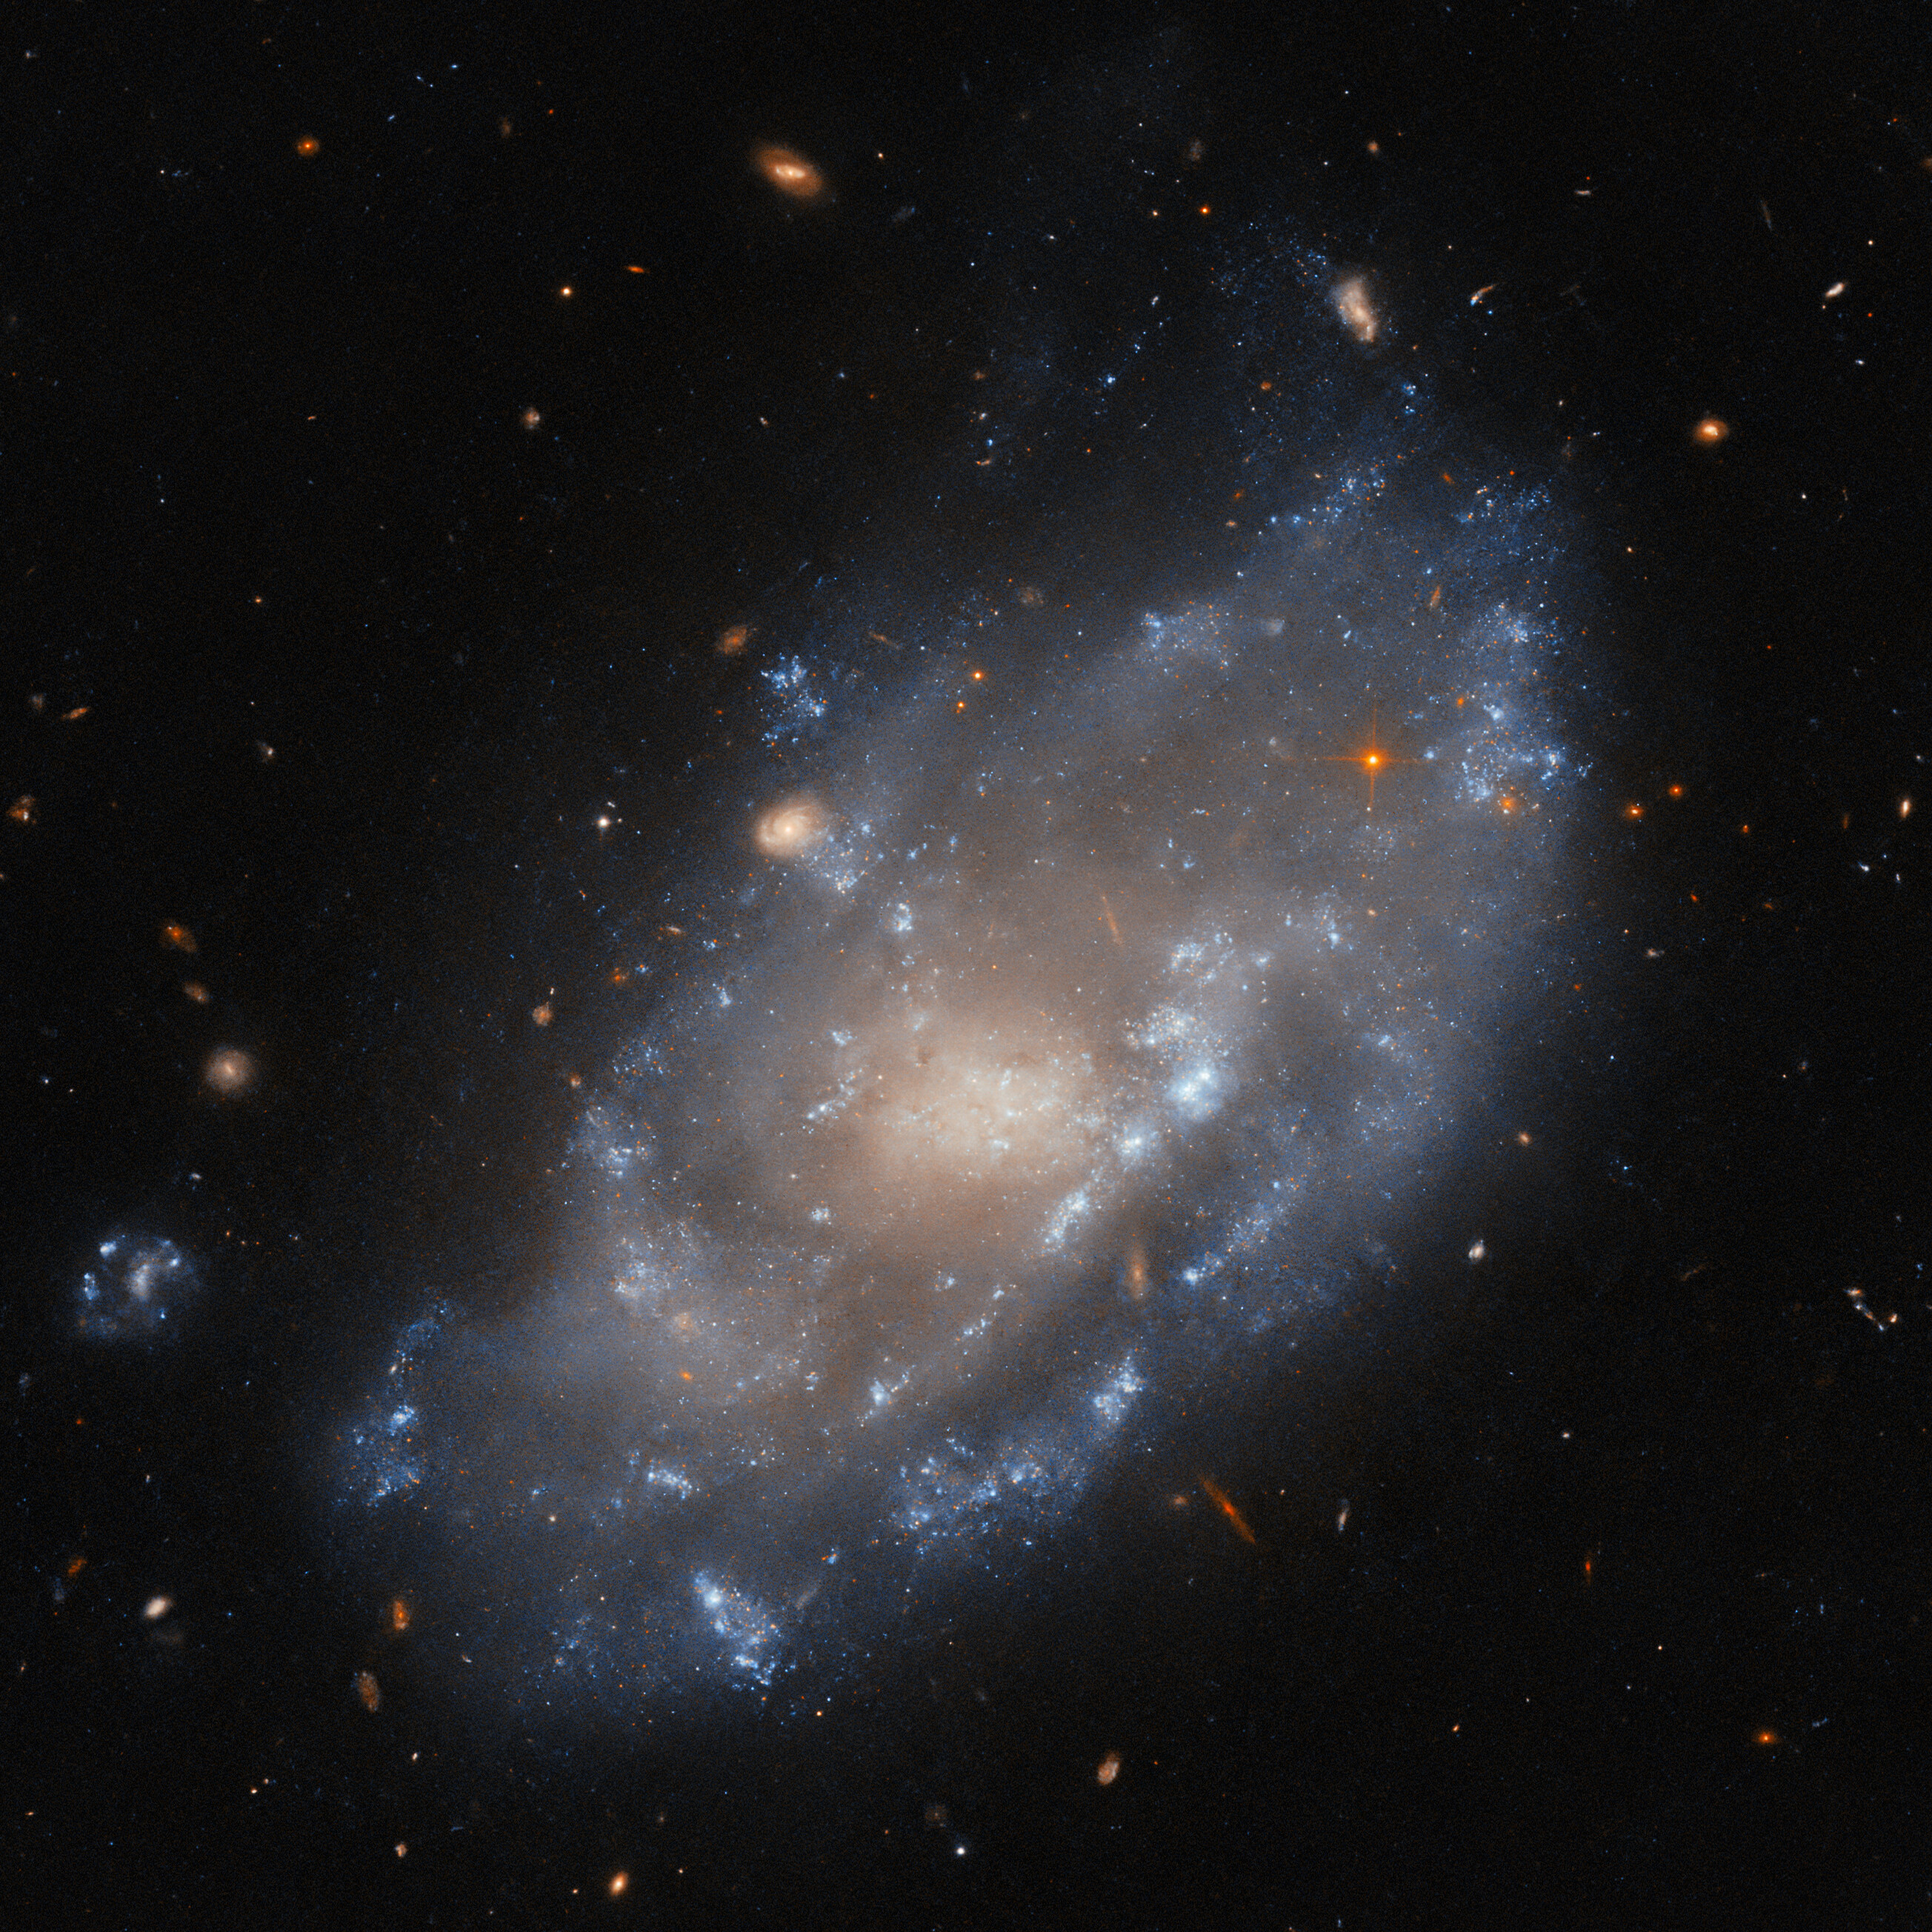 Una galaxia espiral vista inclinada en un ángulo diagonal y hacia el espectador. El núcleo y el disco de la galaxia son de diferentes colores, pero por lo demás son difíciles de distinguir. El disco tiene bordes tenues e irregulares y muchos arcos de parches brillantes de formación estelar. Algunas galaxias distantes son visibles en el fondo alrededor de la galaxia espiral, al igual que varias estrellas en primer plano.